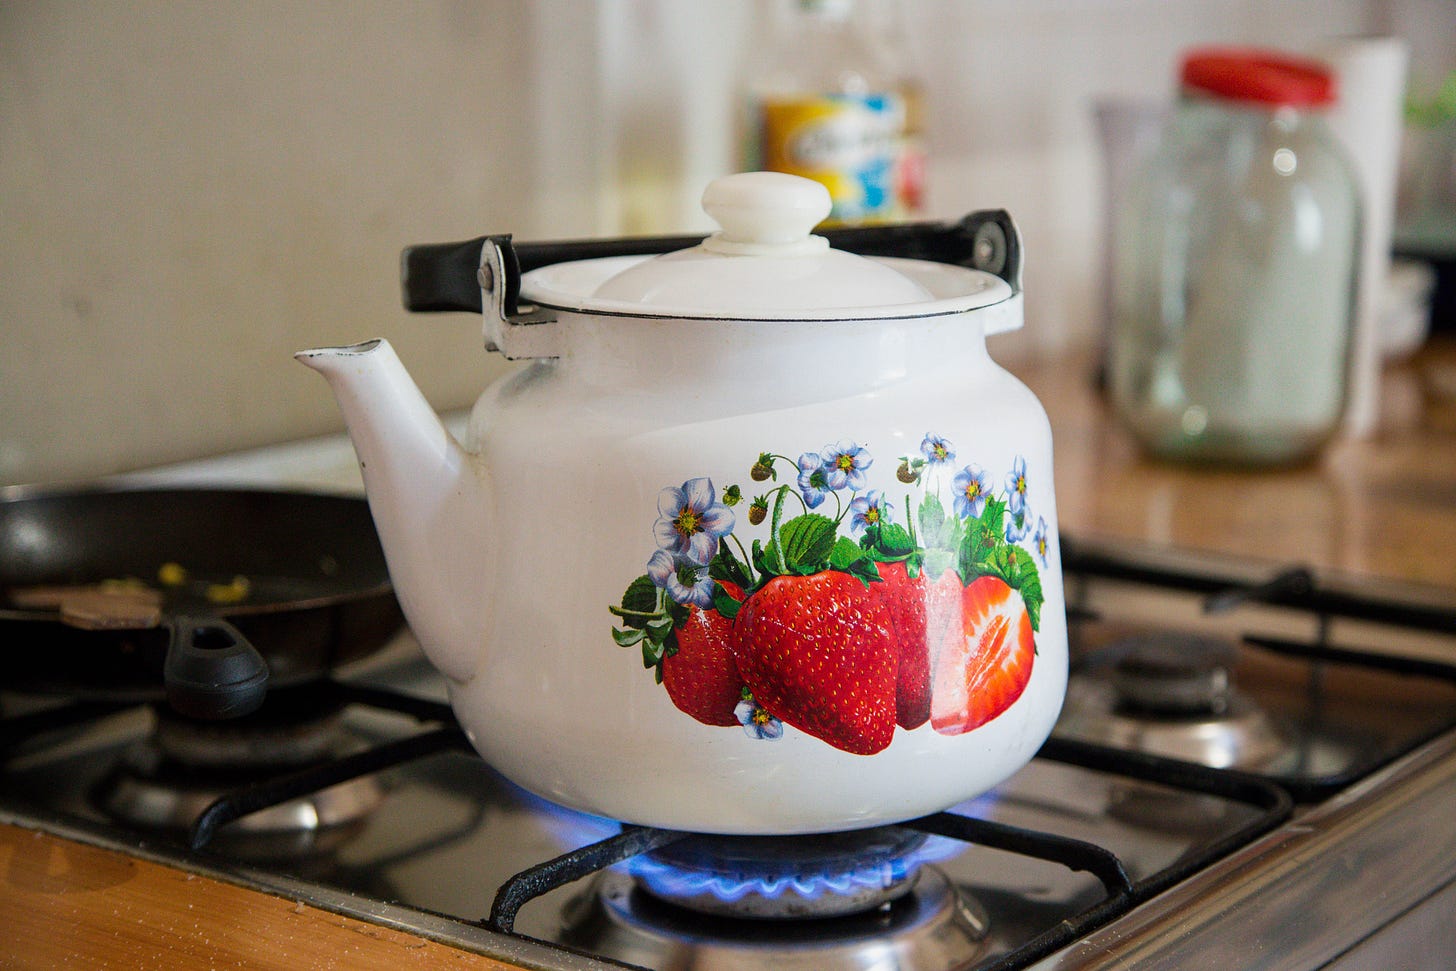 Tea kettle on a stove top by Ioann-Mark Kuznietsov